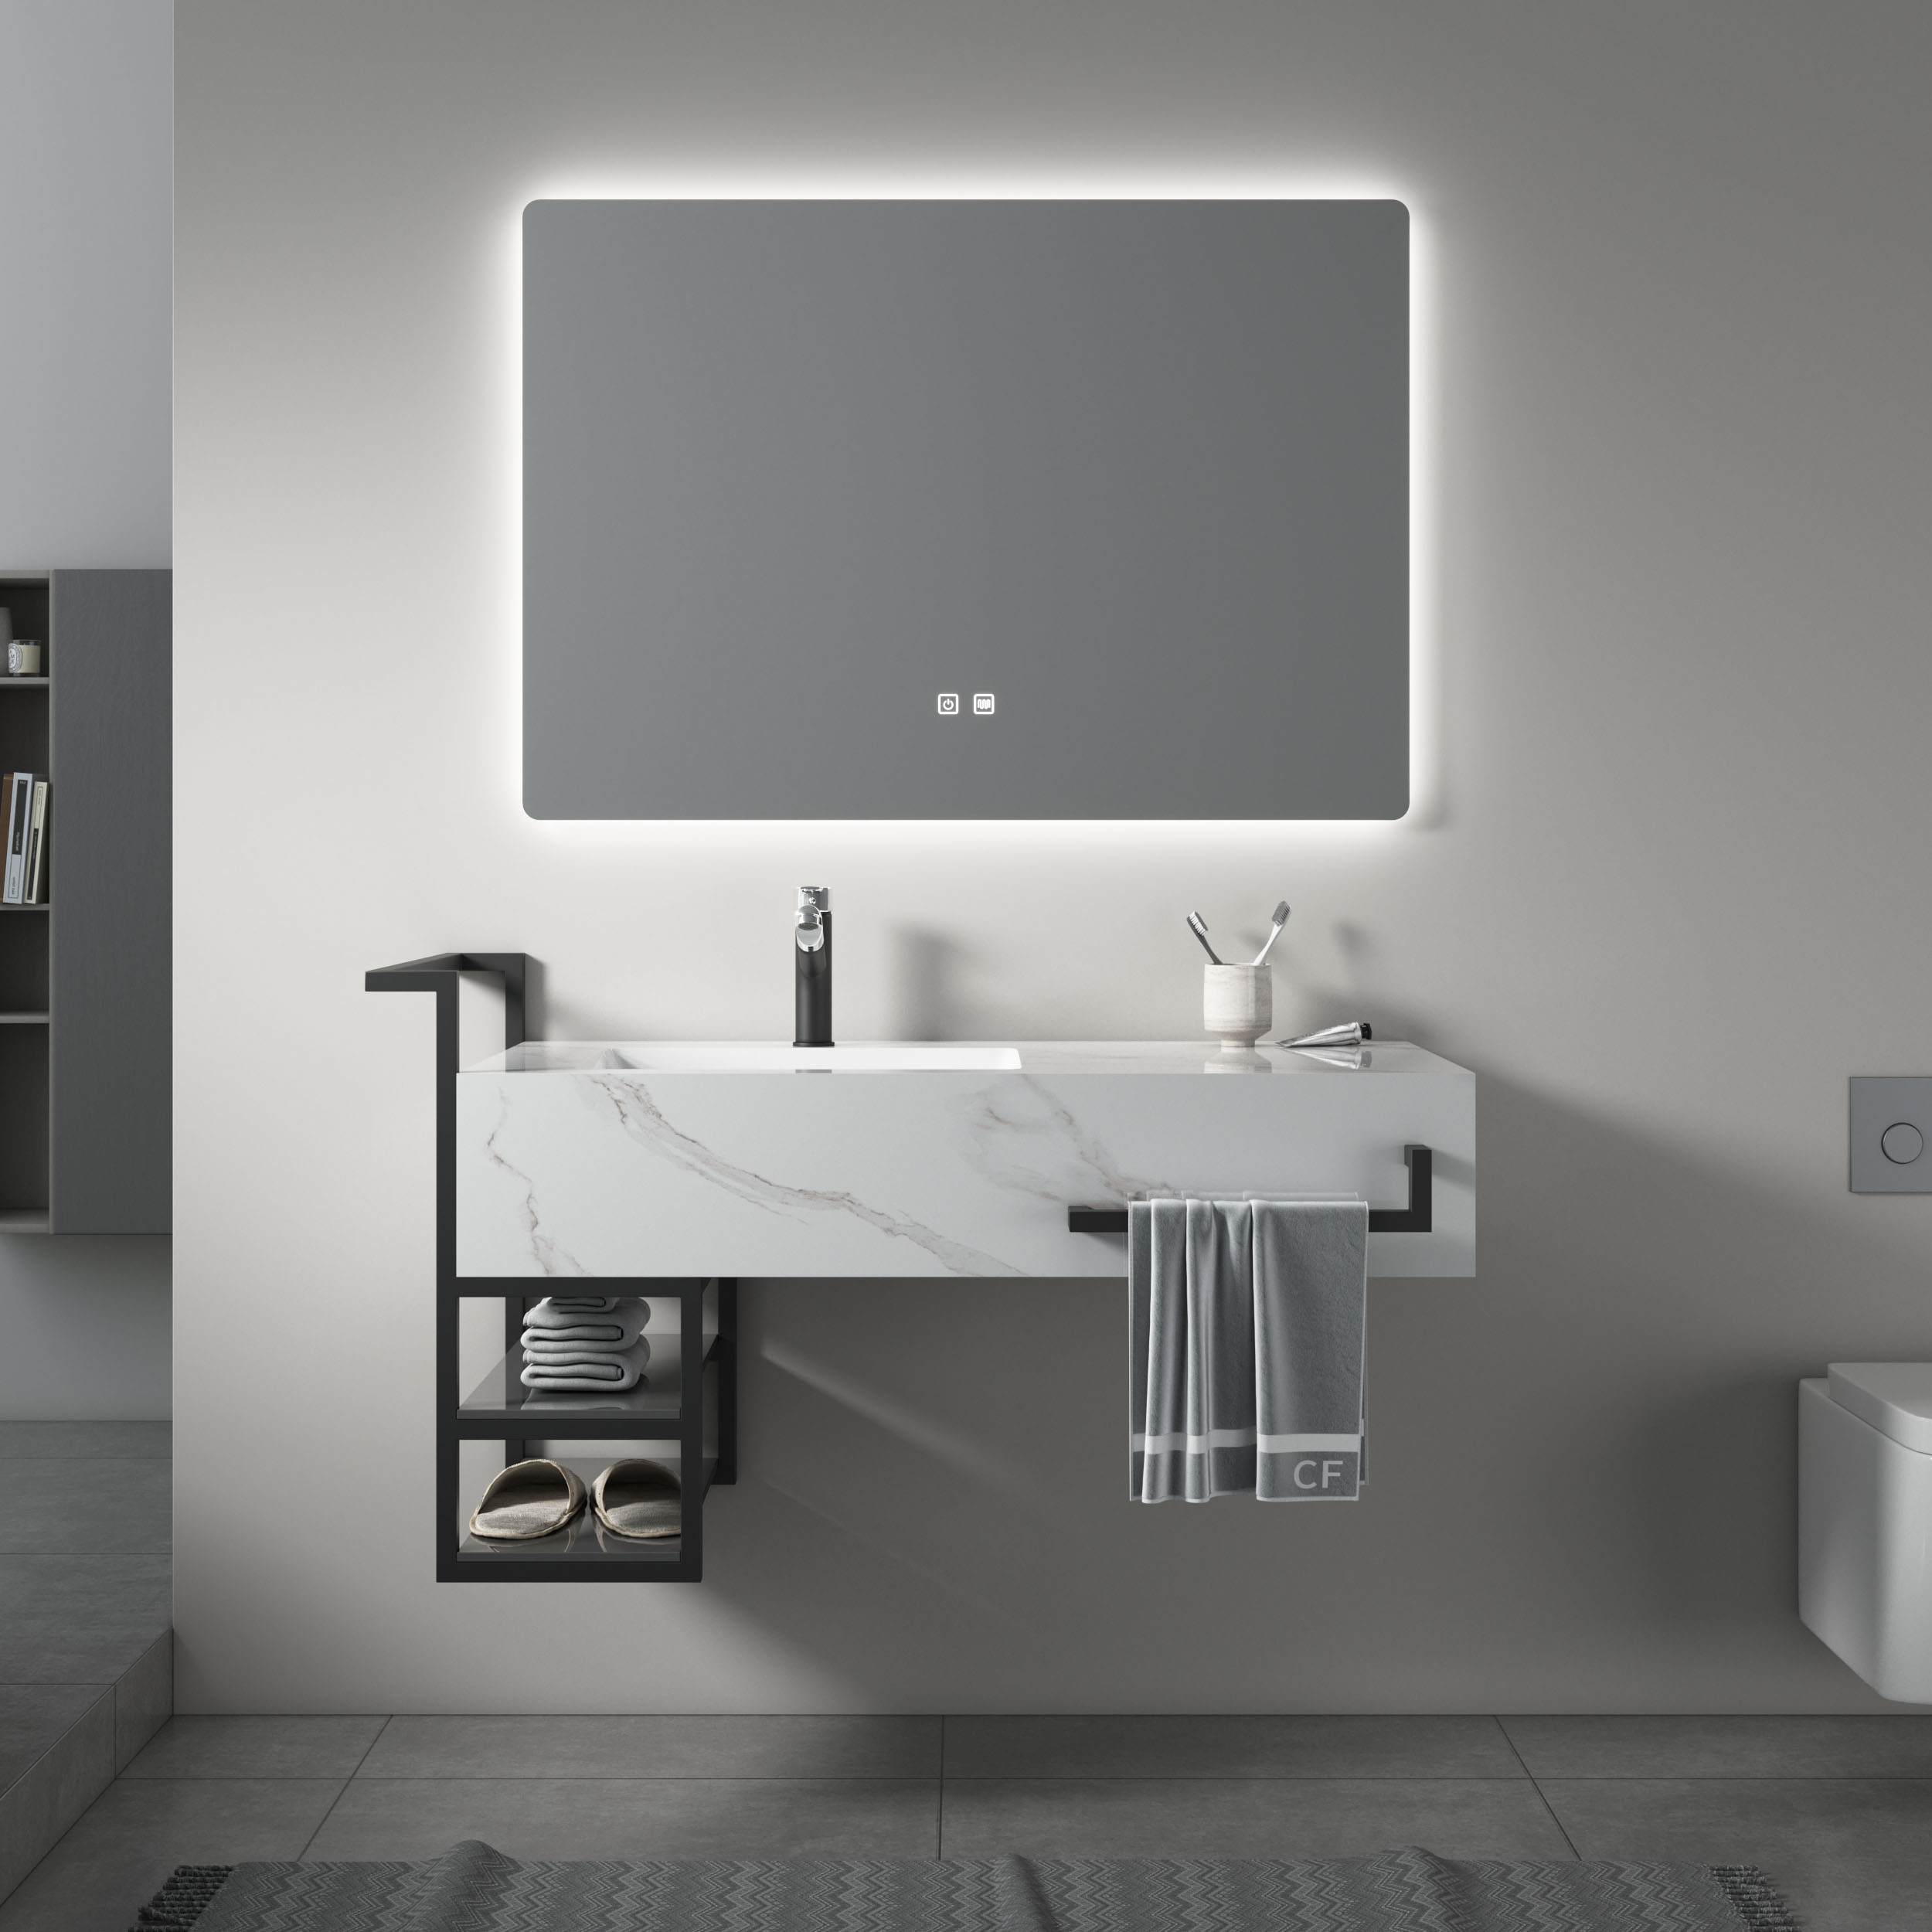 Top selling new models bathroom vanity lighting bathroom vanity supplier factory price hotel bathroom vanity